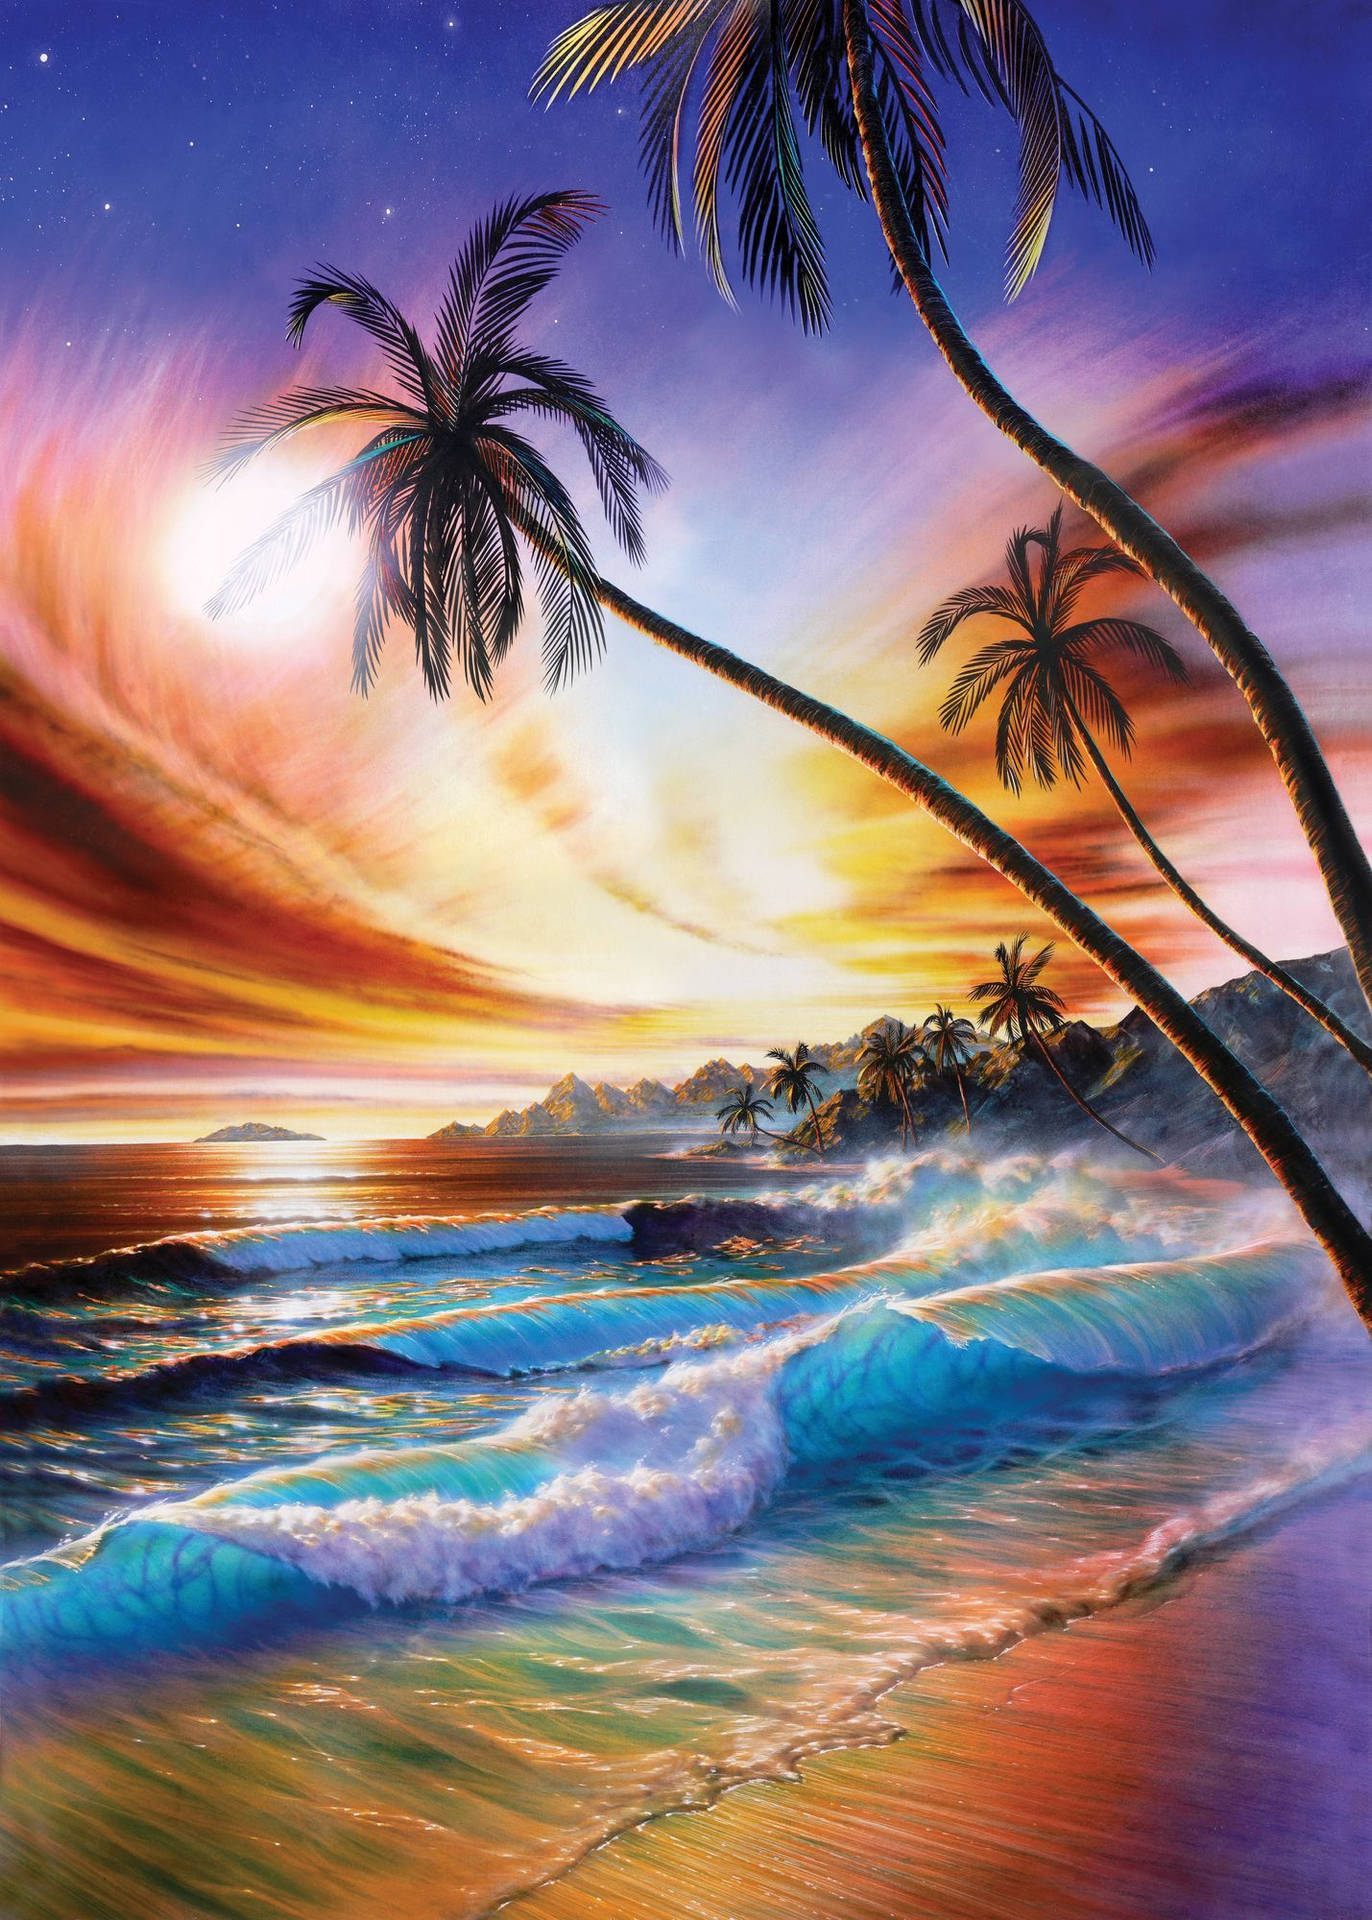 4k Iphone Beach Waves Crashing Orange Night Sky Background